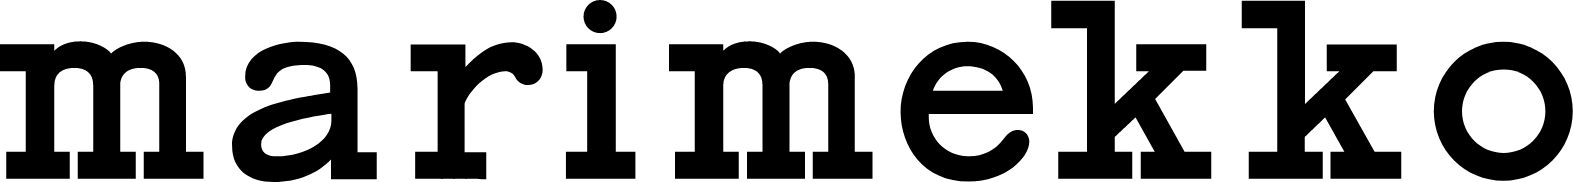 Marimekko logo large (transparent PNG)